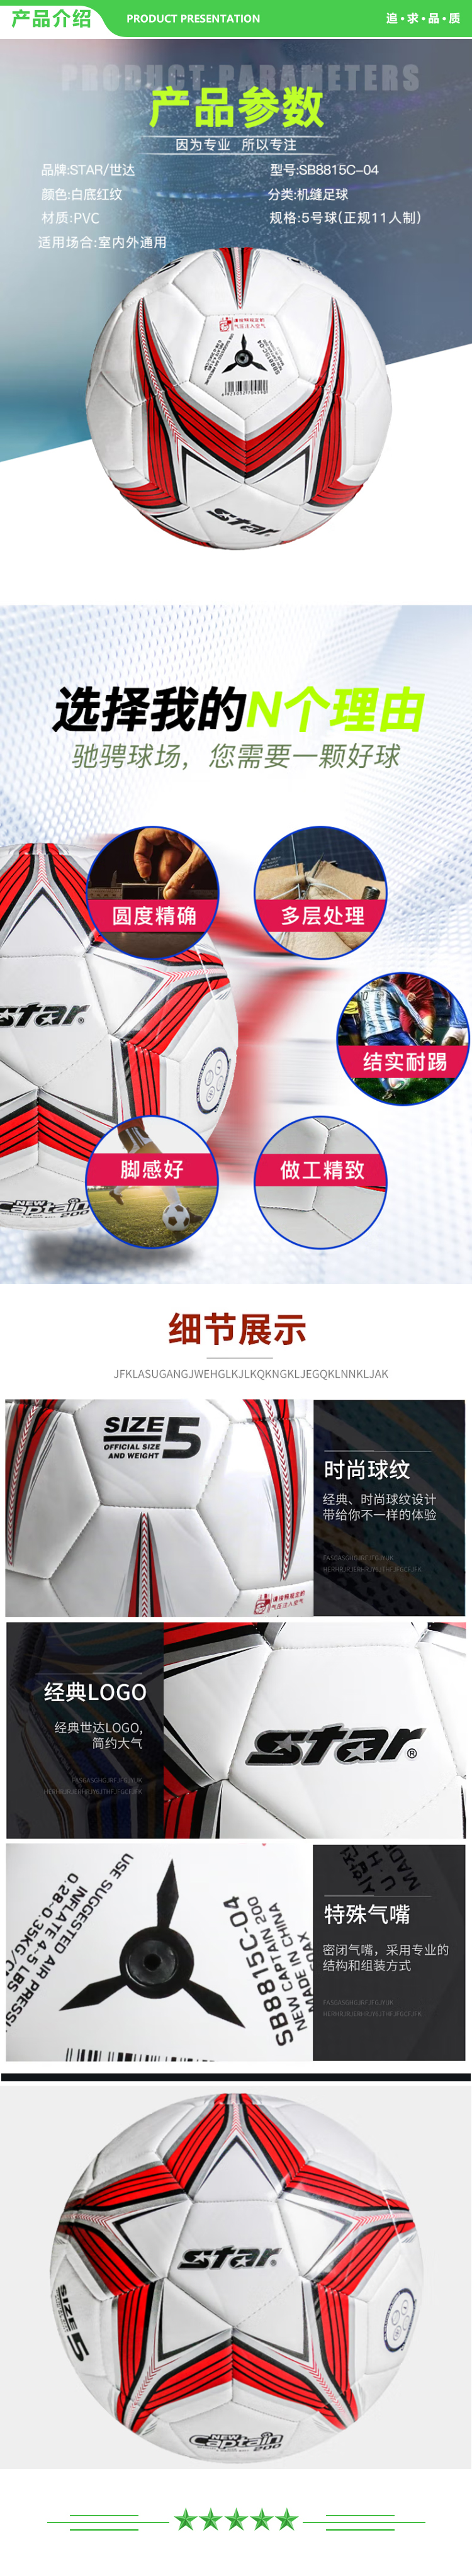 世达 star SB8815C-04 足球红色PVC 机缝 5号足球青少年训练比赛用球足球  2.jpg